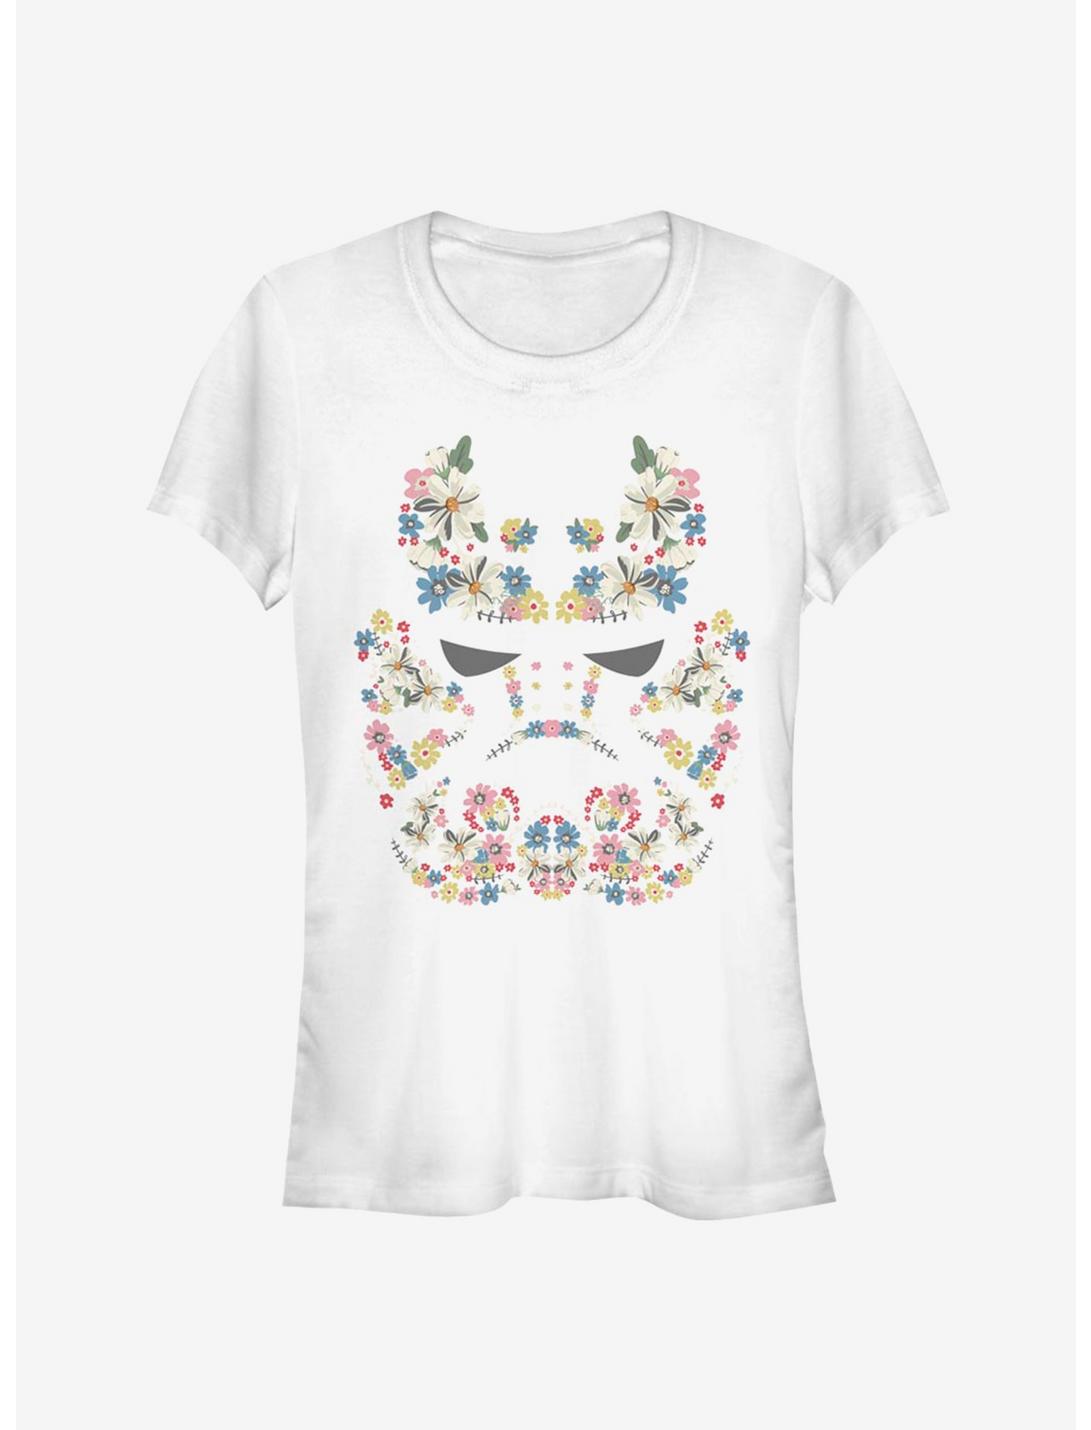 Star Wars Floral Trooper Girls T-Shirt, WHITE, hi-res